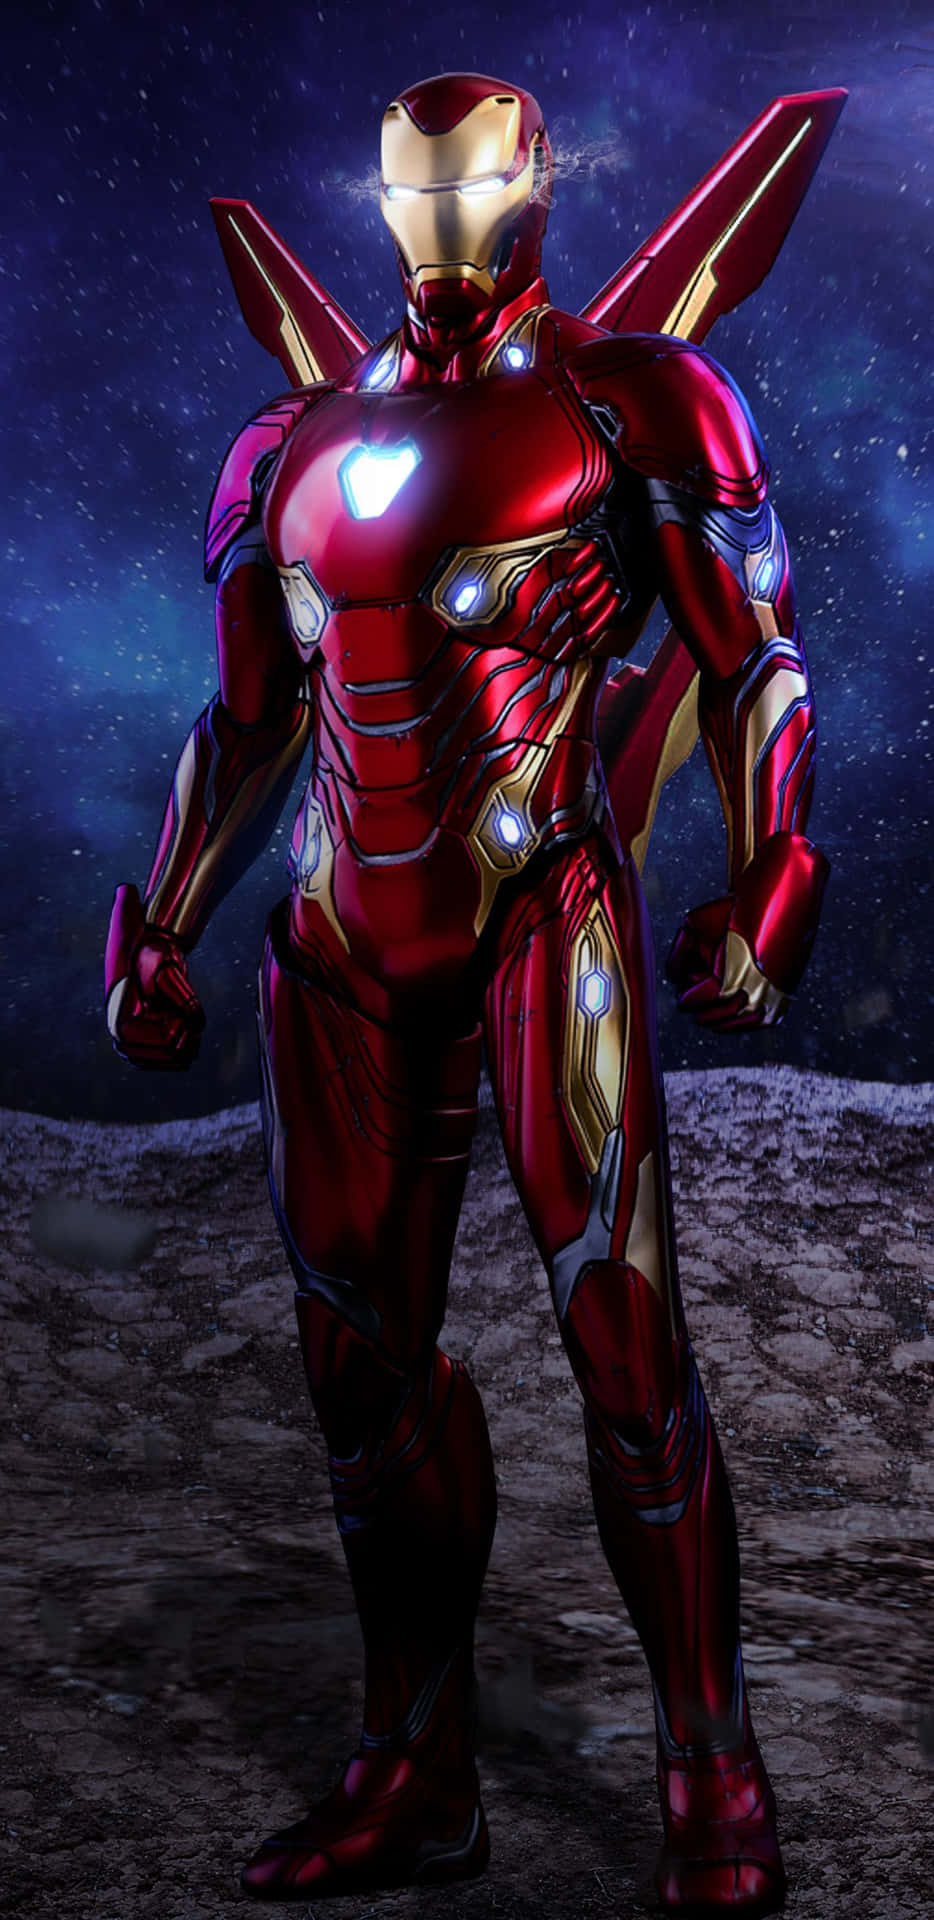 Iron Man slutter sig til Avengers for at kæmpe for retfærdighed. Wallpaper